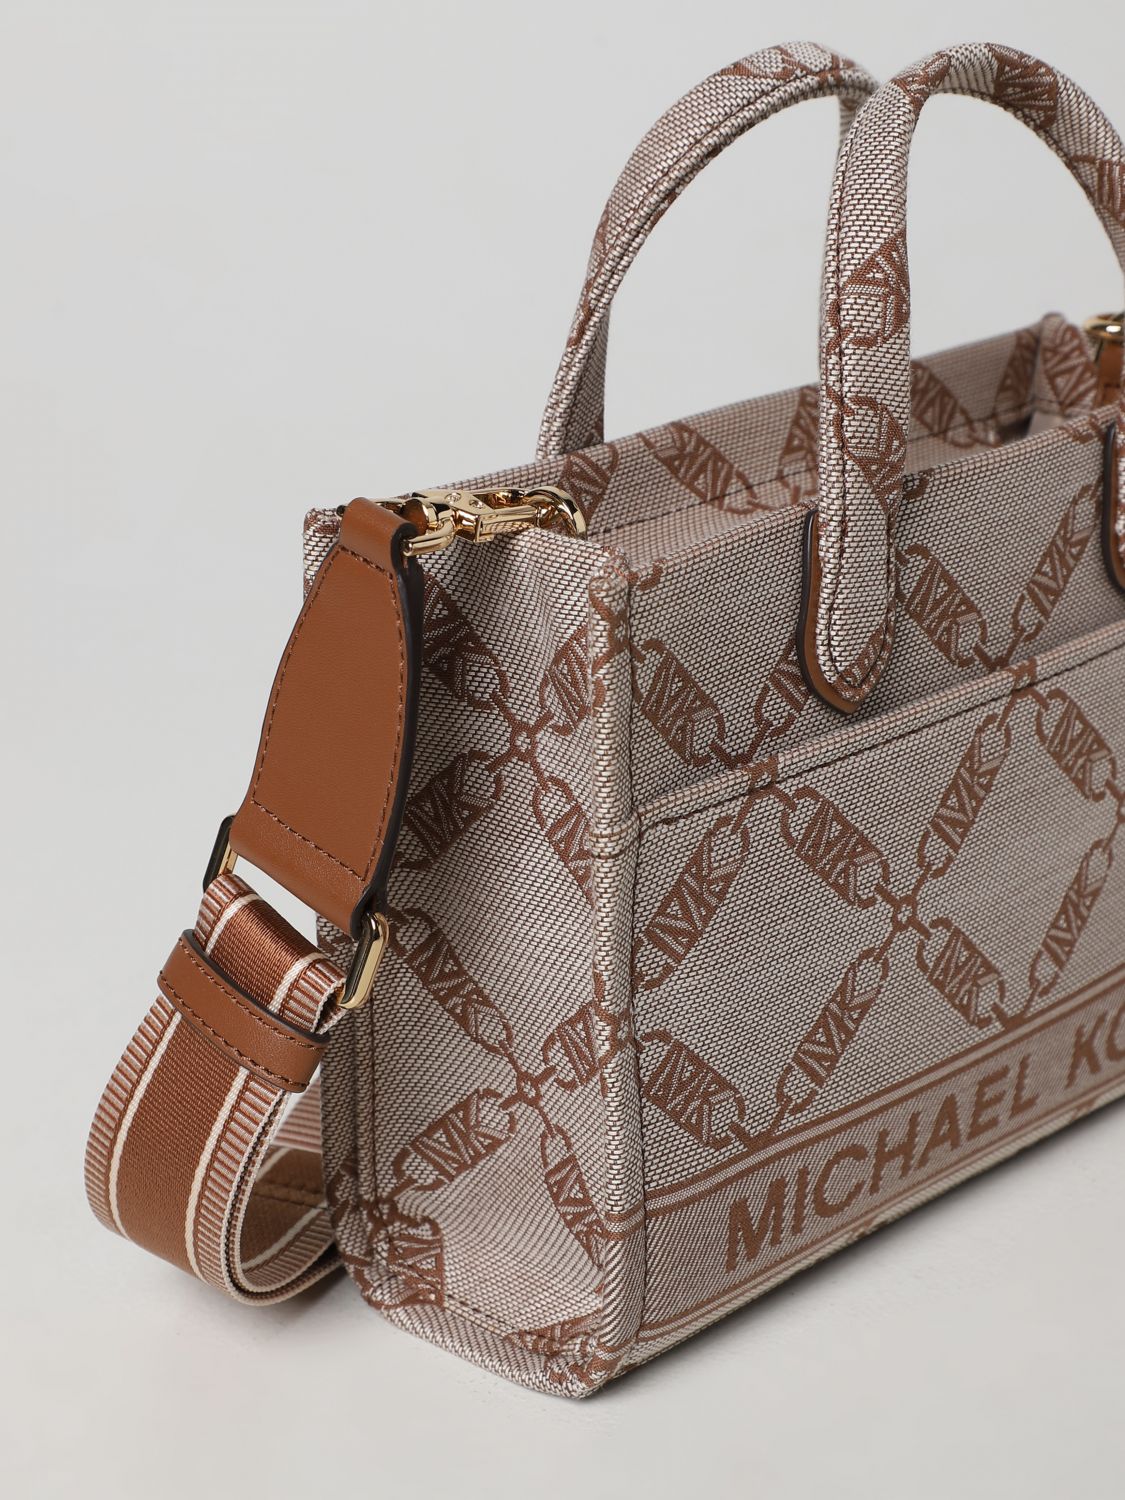 MICHAEL KORS: handbag for woman - Natural | Michael Kors handbag 30S3G3GM5J  online on 